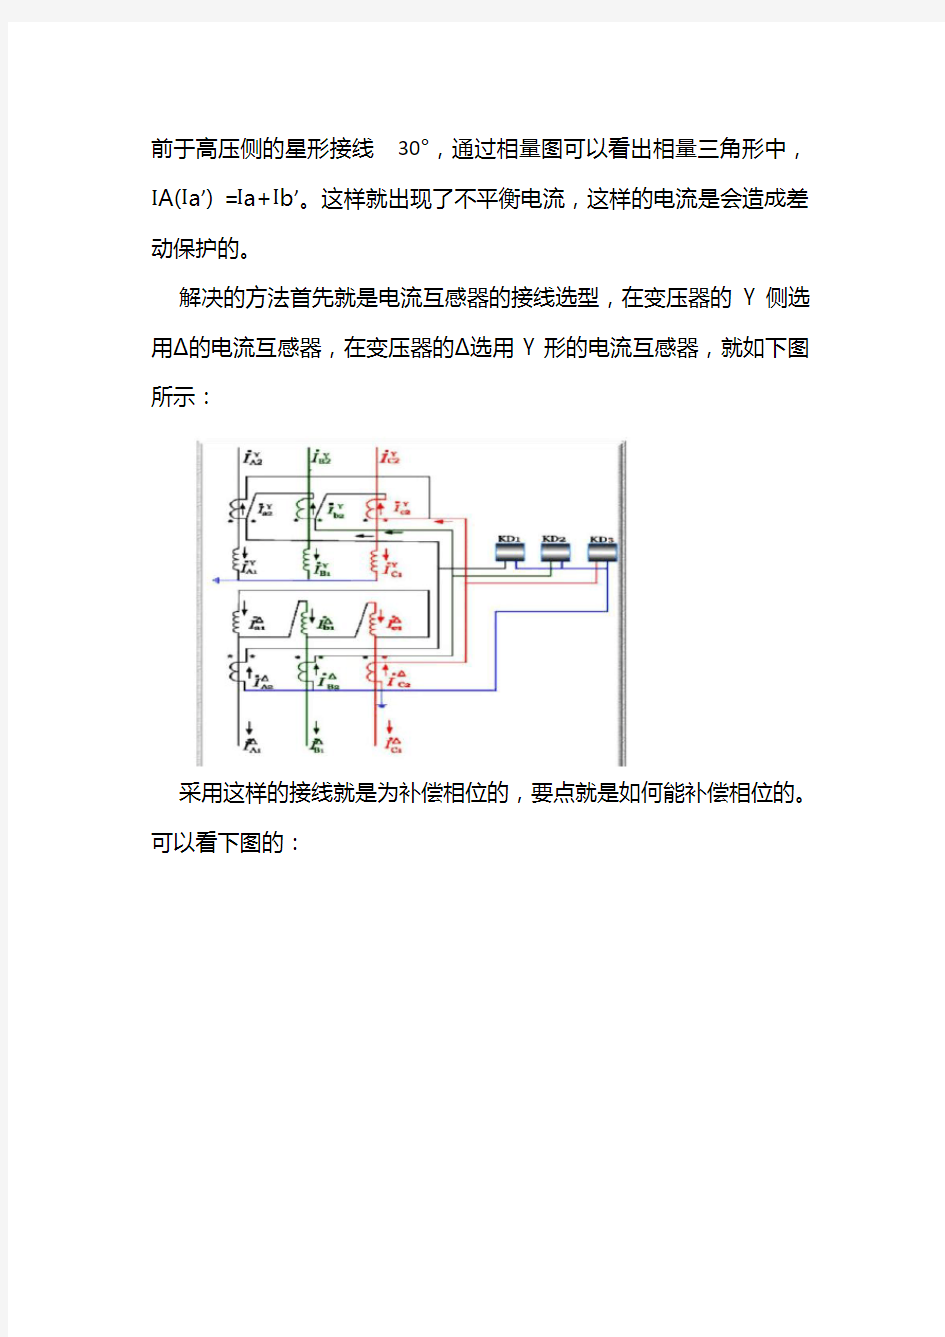 变压器不平衡电流产生原因及消除方法(针对变压器的差动保护) 2020.08.03